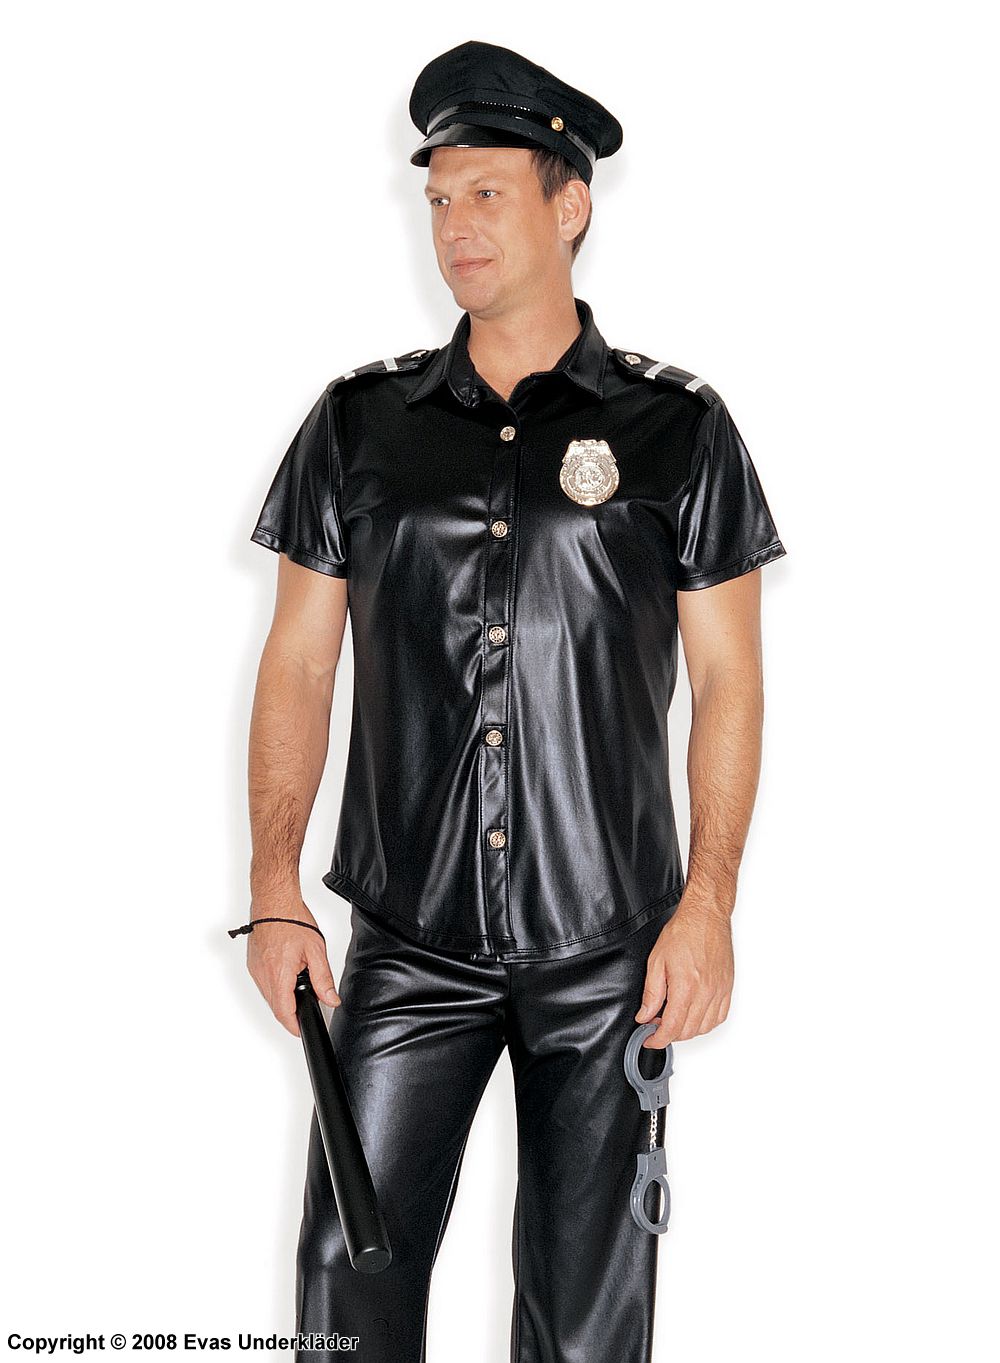 Beat cop costume